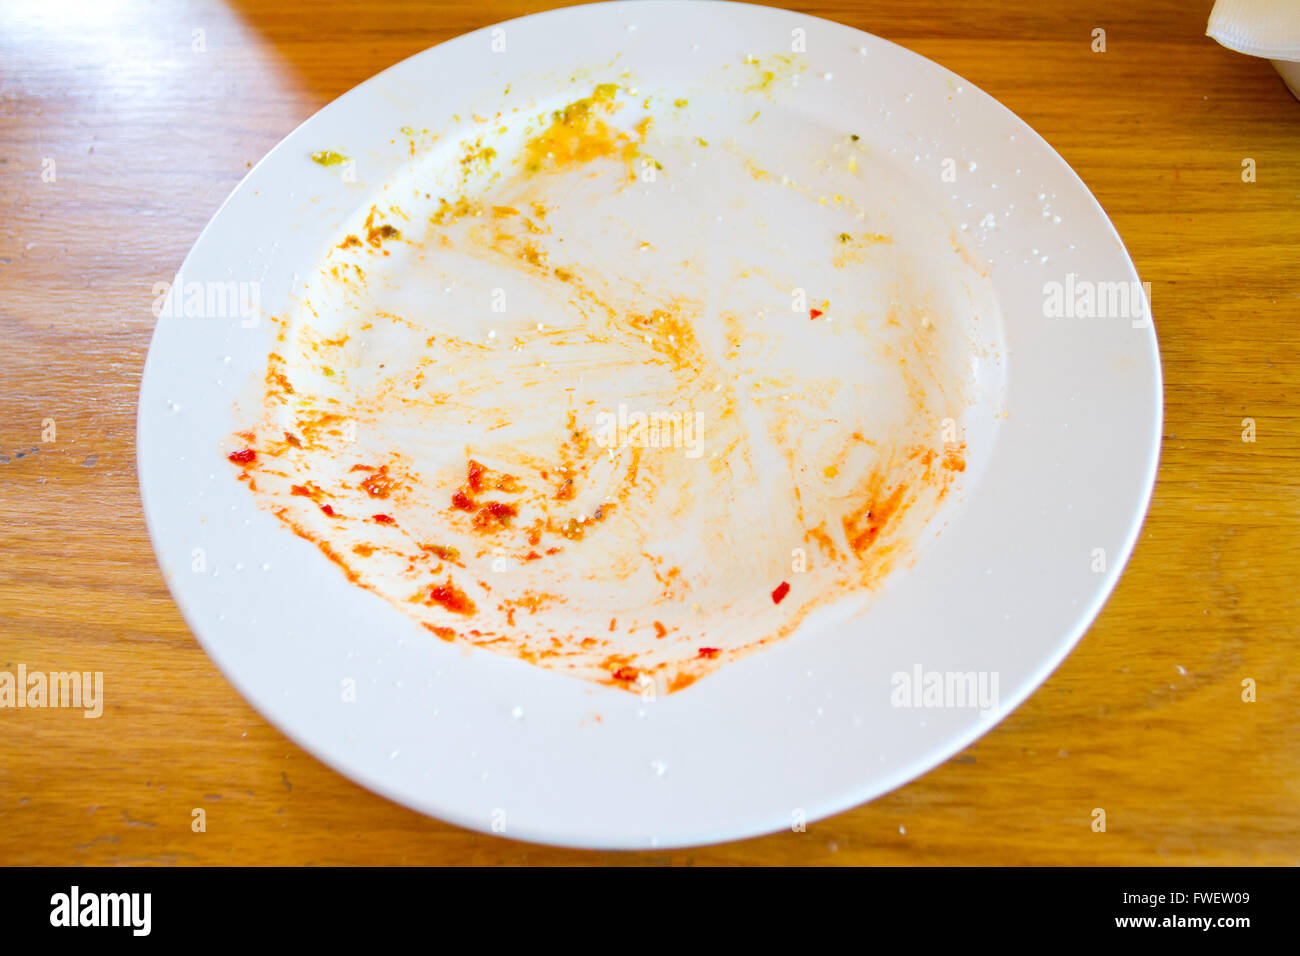 Questa piastra utilizzata per avere cibo su di essa ma tutto era stato mangiato in questo ristorante lasciando la piastra dove il pasto era vuoto. Foto Stock